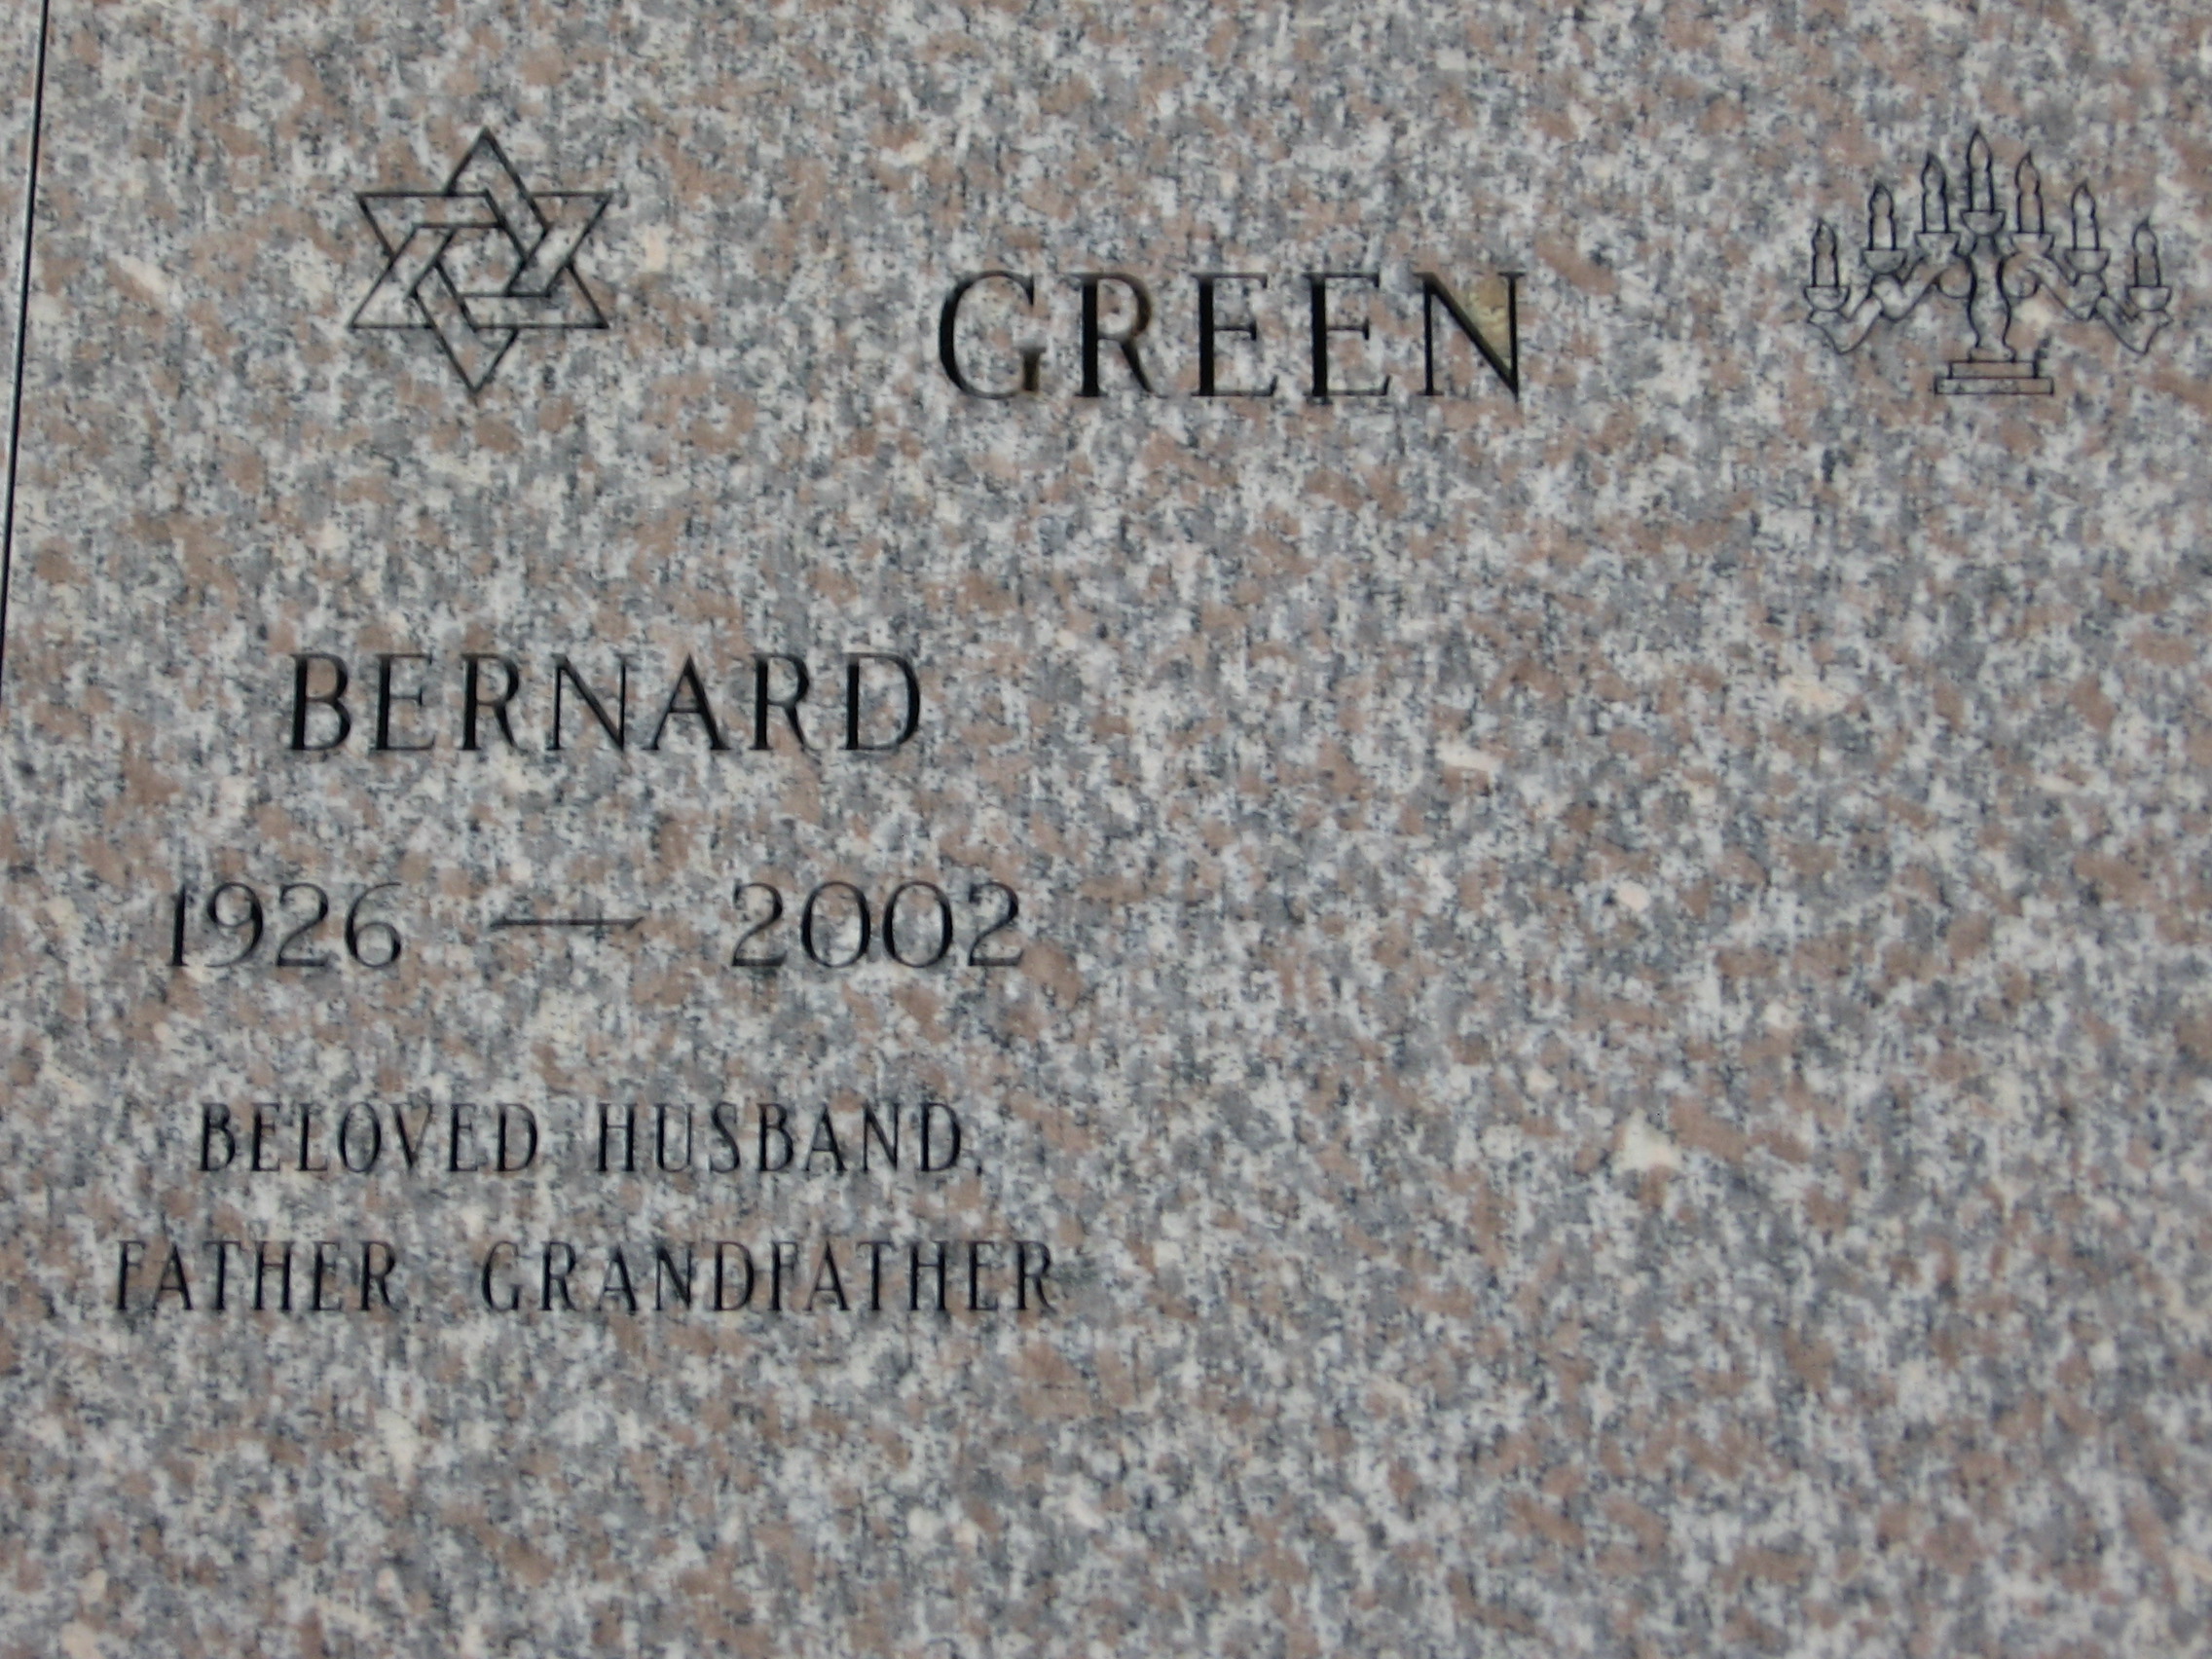 Bernard Green